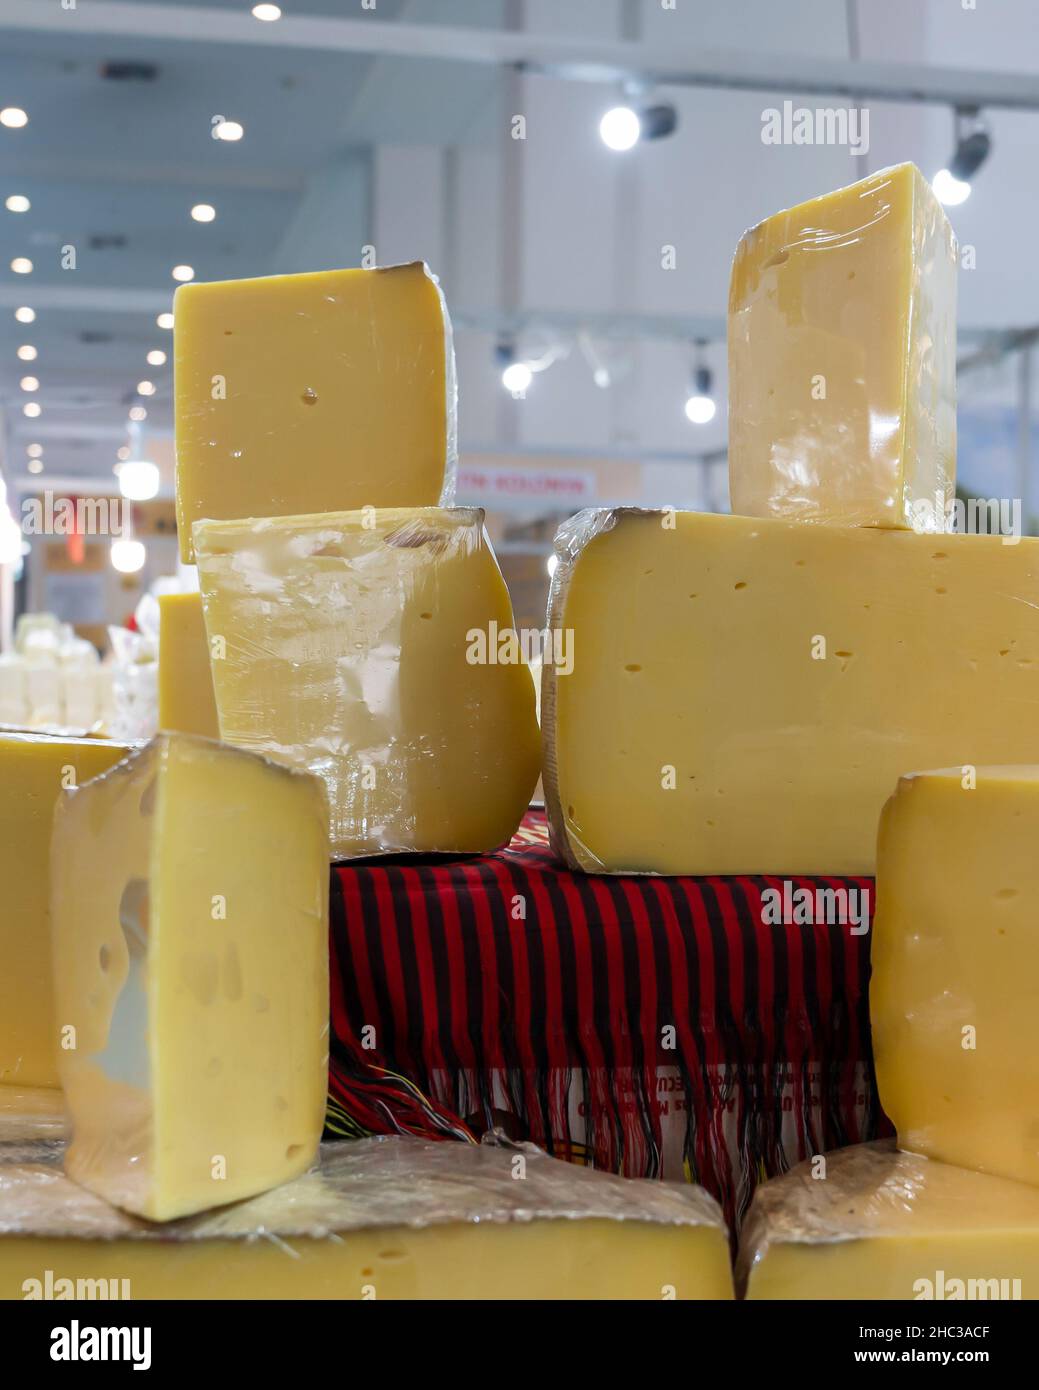 Cheddar, formaggio kashar avvolto con nastro estensibile è venduto in un mercato in condizioni igieniche. Foto Stock